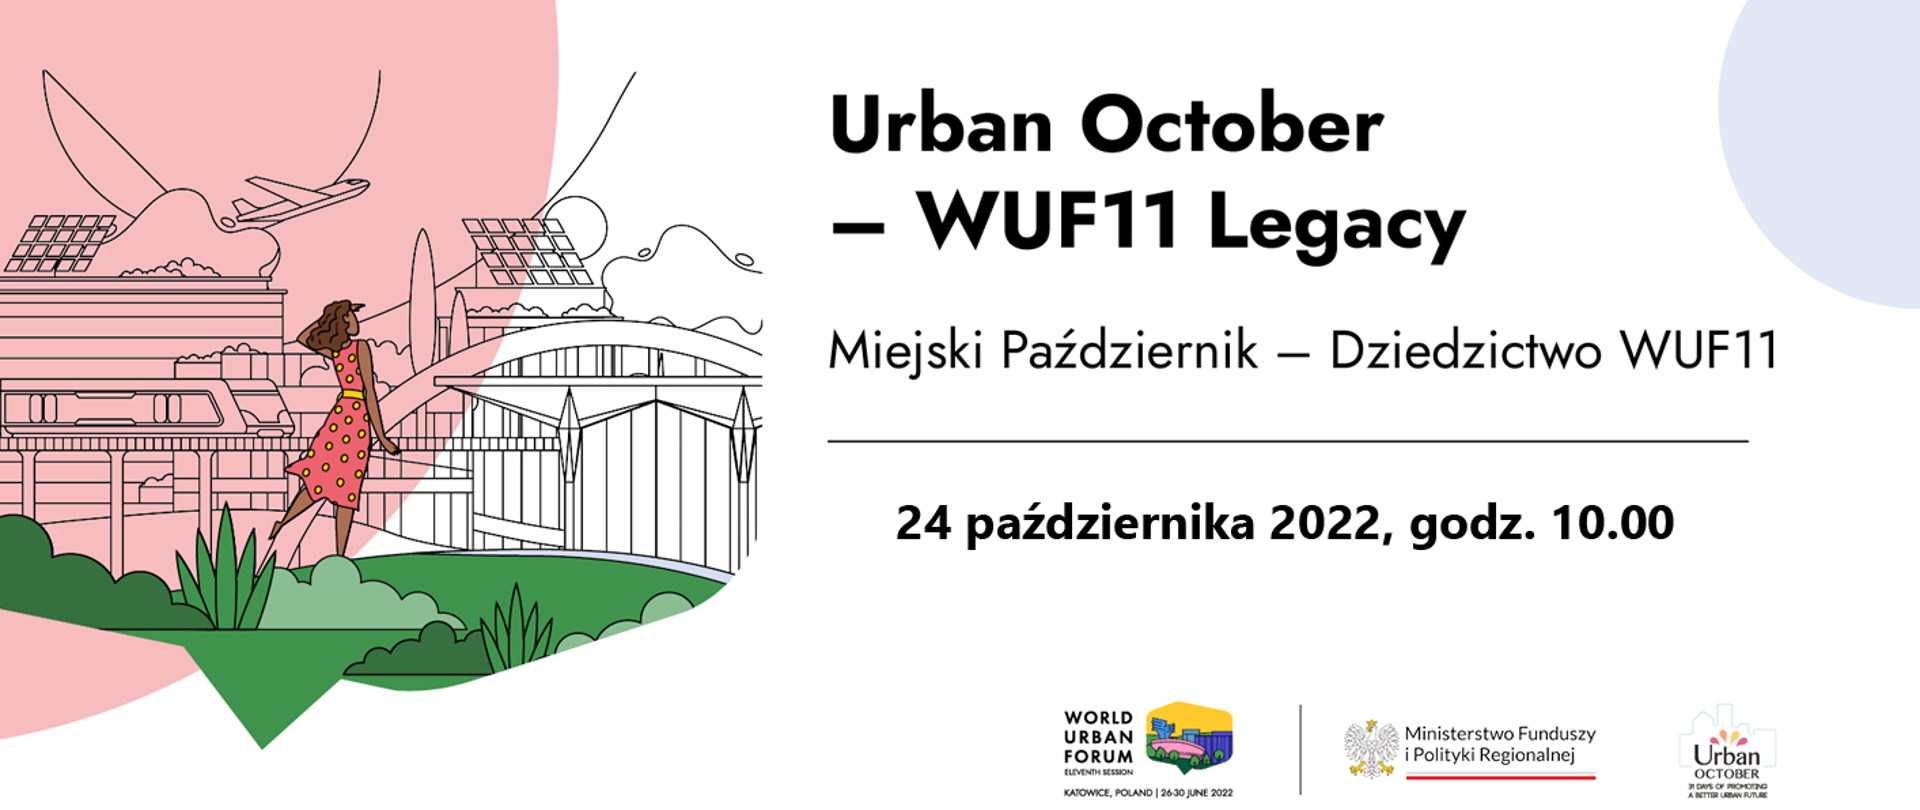 NA grafice napis: Urban October - WUF11 Legacy Miejski Październik - Dziedzictwo WUF11 24 października 2022, godz. 10.00